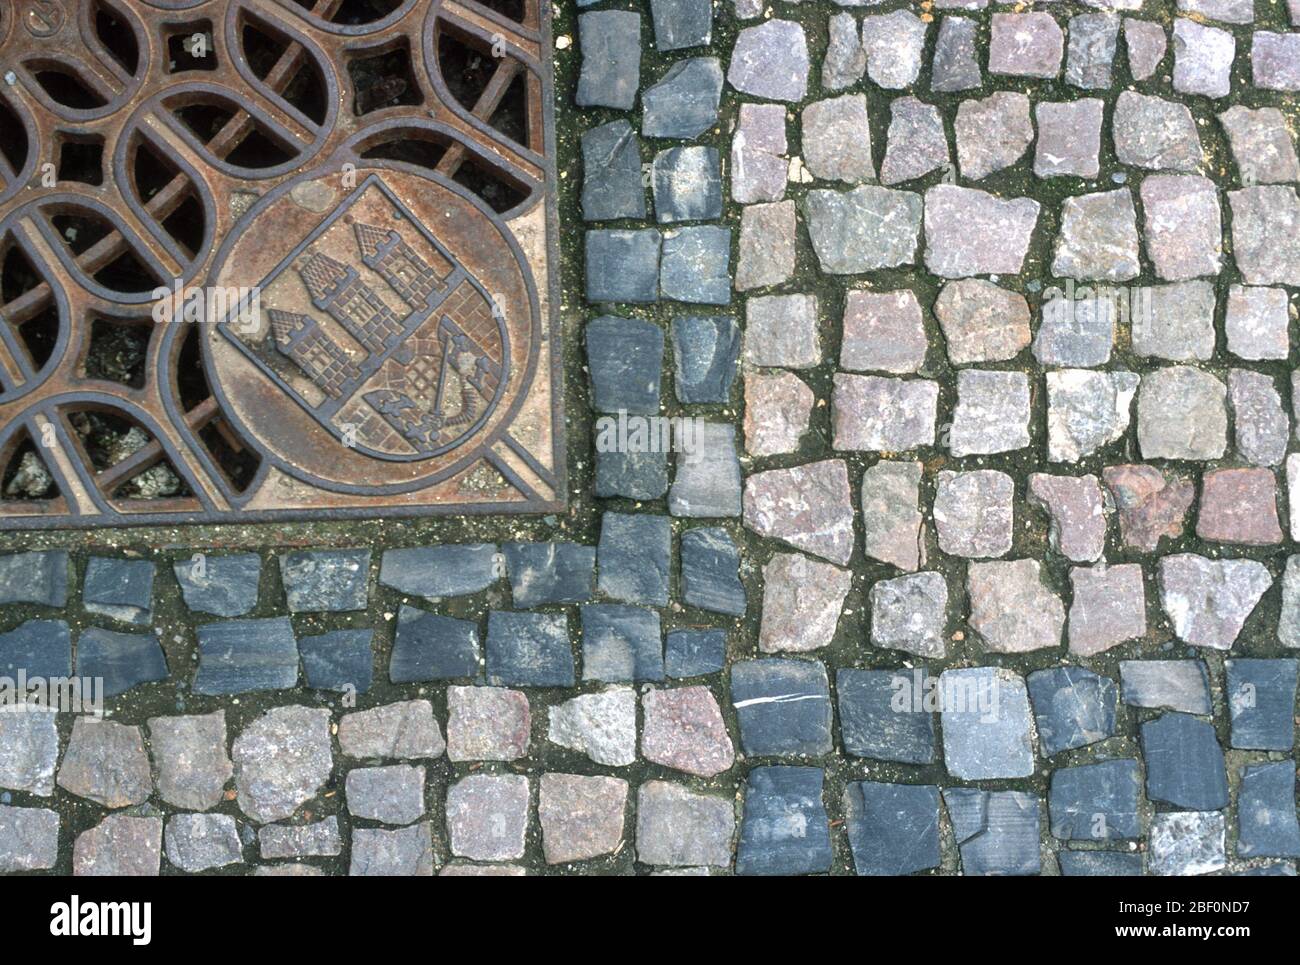 Dettaglio di una strada acciottolata e di una coperta di drenaggio ornata con il stemma della Città di Praga, Repubblica Ceca. Il centro storico di Praga è patrimonio dell'umanità dell'UNESCO. Foto Stock